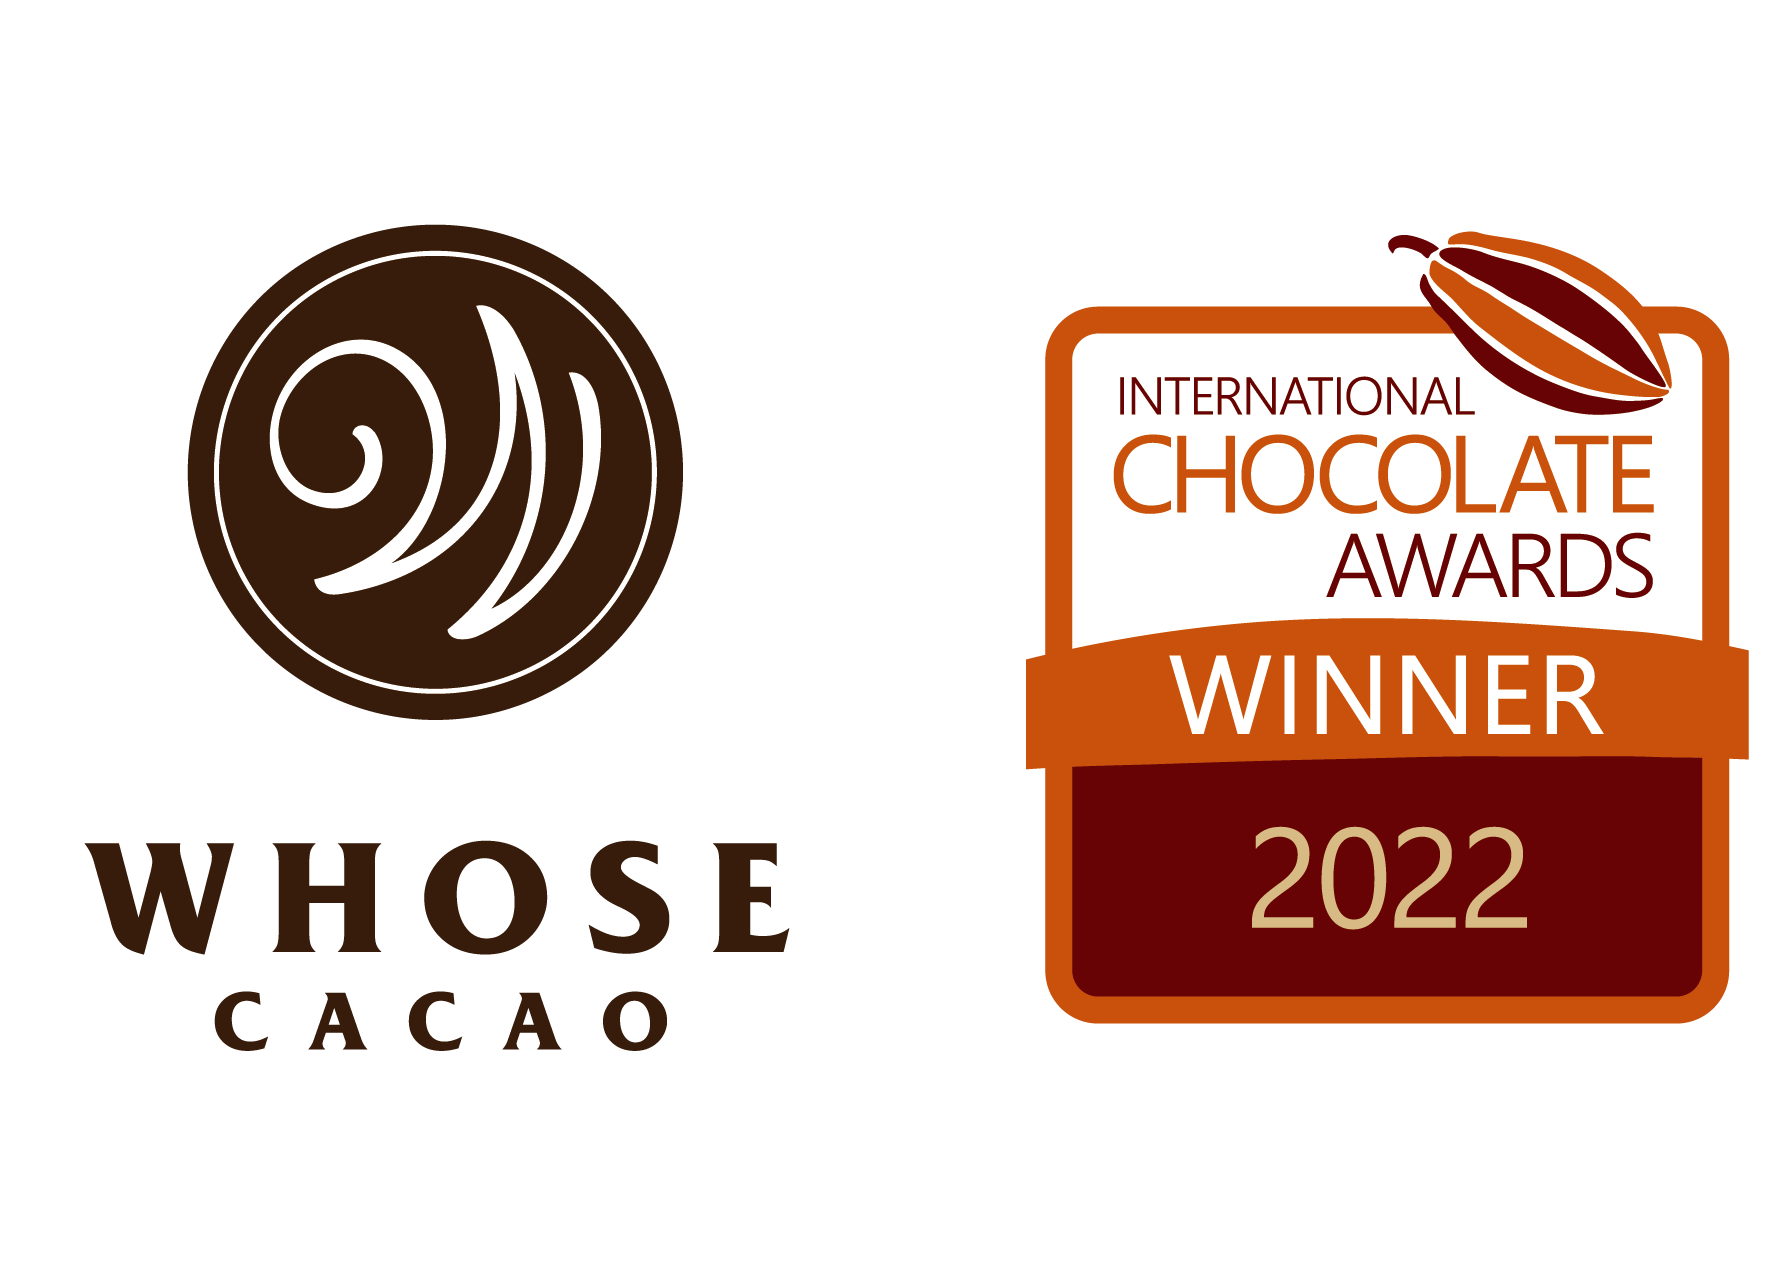 カカオ原料ブランドのWHOSE CACAO、国際チョコレート品評会「ICA」世界大会にてスペシャルティカカオドリンク「Yuzusansho」が「最優秀賞」、「金賞」、「ローカル賞」の三冠を受賞！ #Z世代Pick